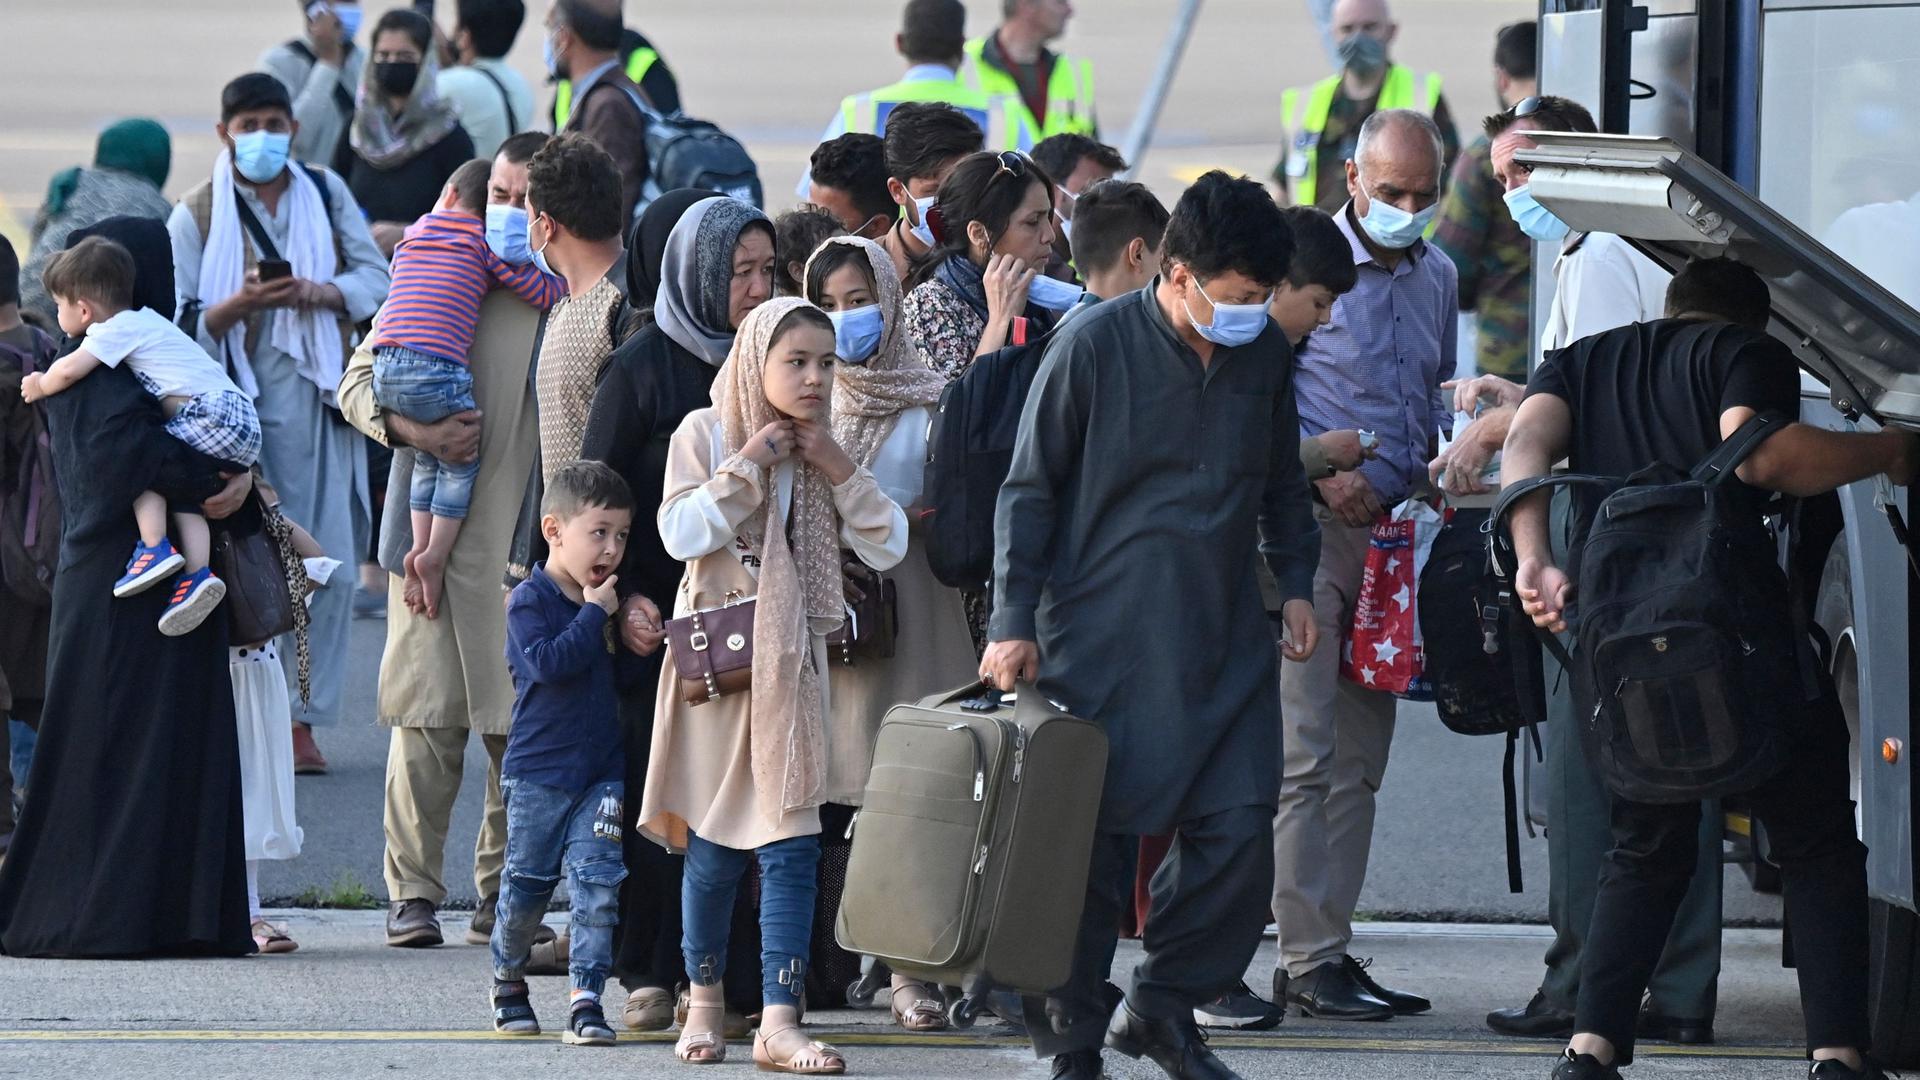 Parmi les personnes accueillies à l'aéroport militaire de Melsbroek, figurait la famille luxembourgeoise attendue.